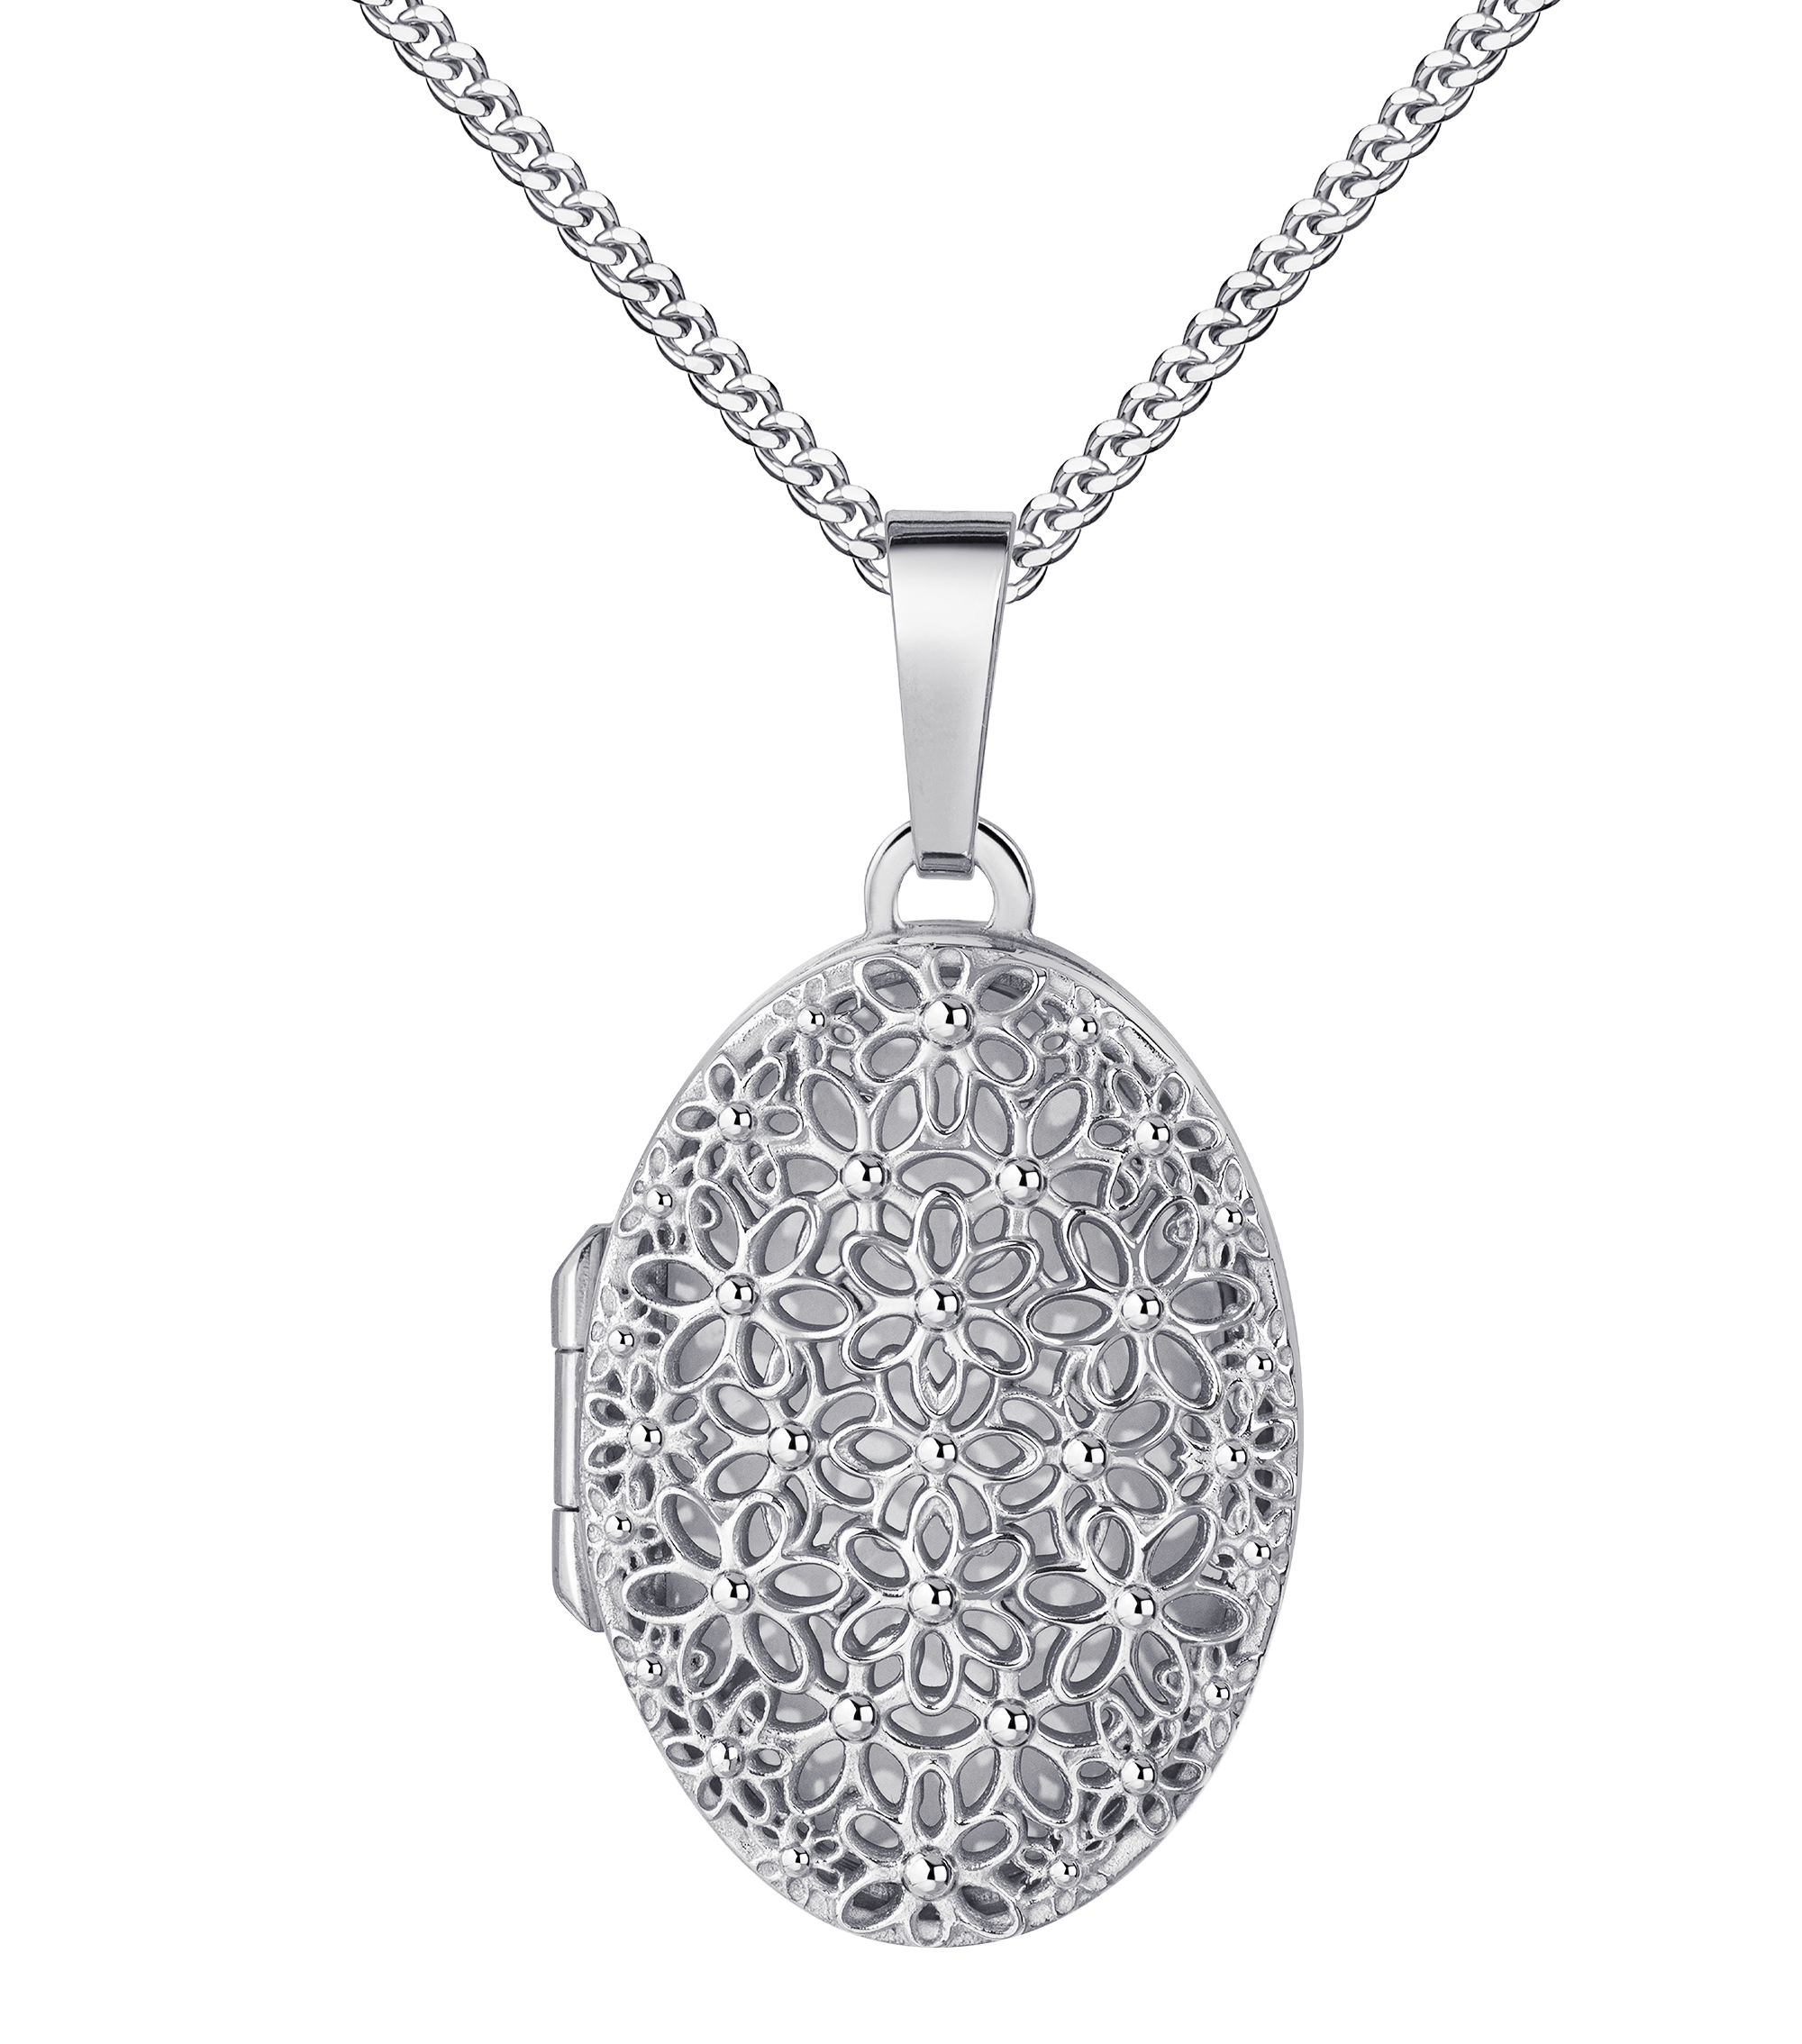 Medaillon 925 Sterling-Silber Amulett oval für 1 Bild zum Öffnen Bildanhänger mit Schmuck-Etui